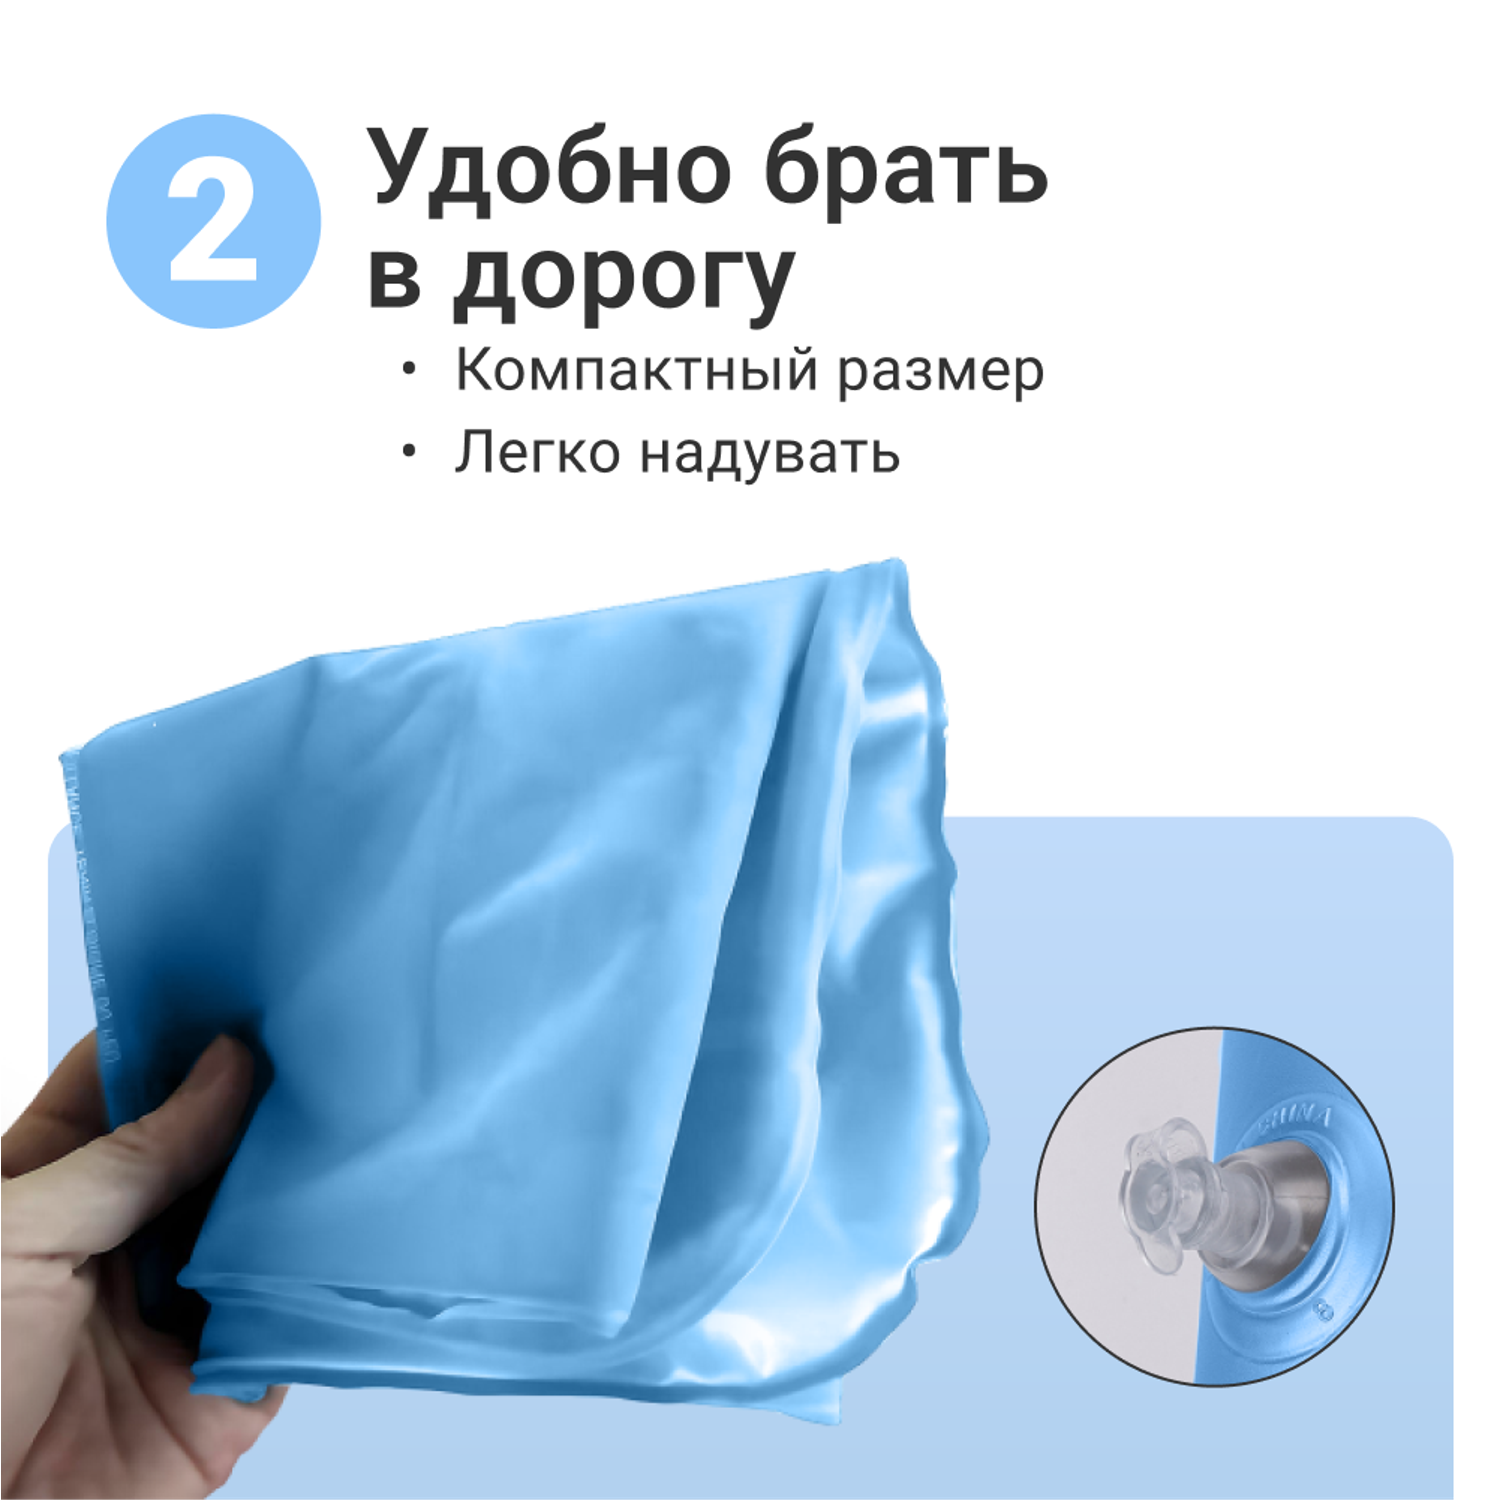 Подушка надувная ZDK Homium Travel Comfort дорожная цвет голубой - фото 5